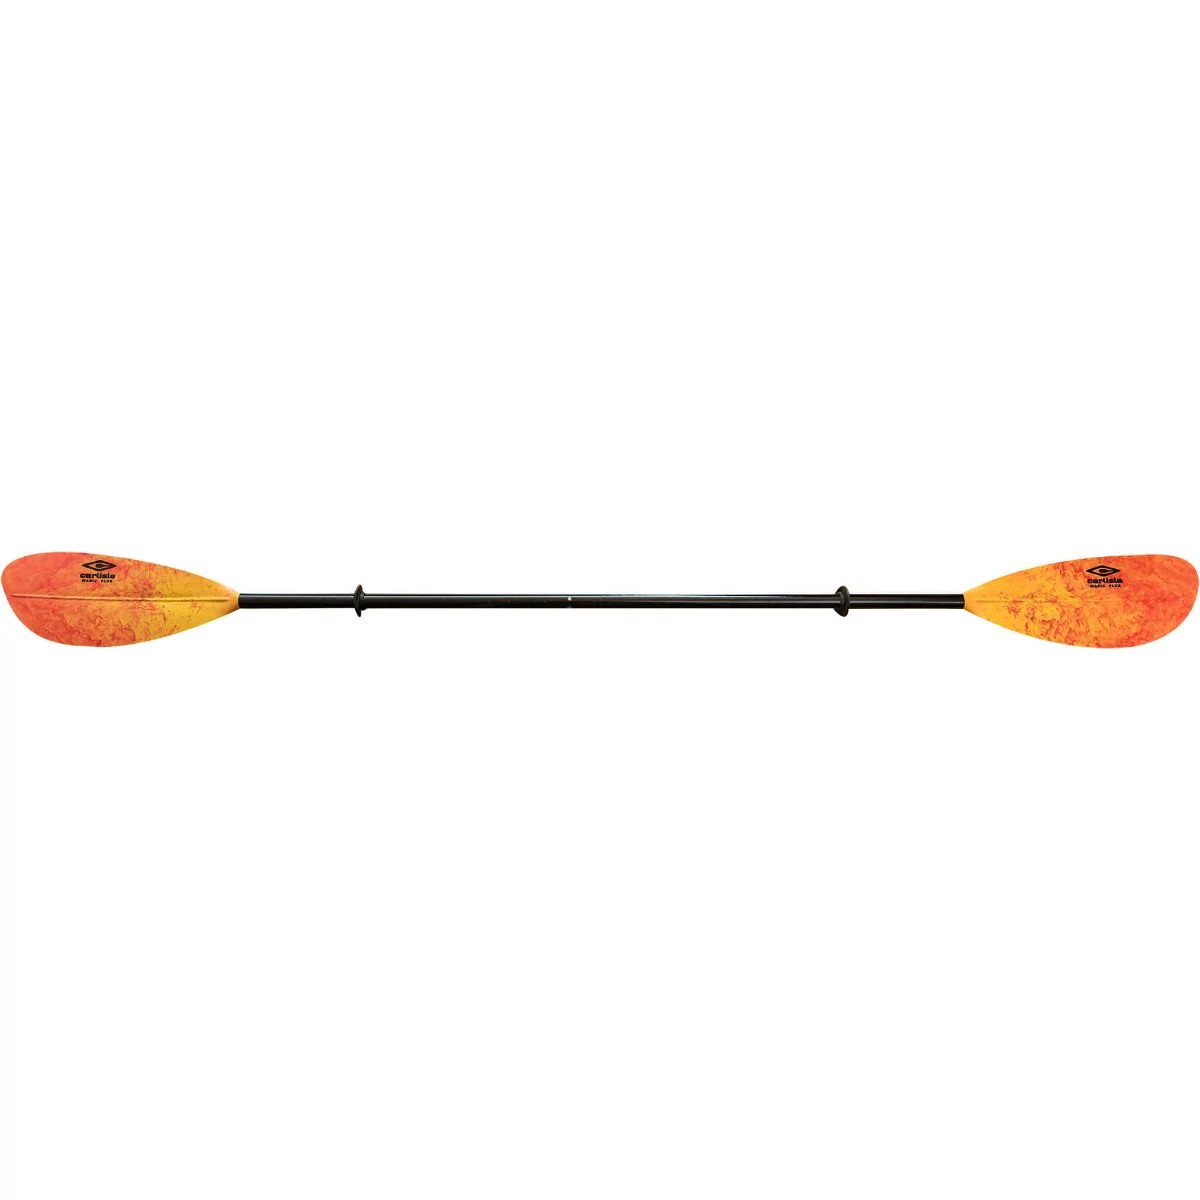 Polypro Blades/Aluminum Shaft Carlisle Magic Mystic Poly Kayak Paddle